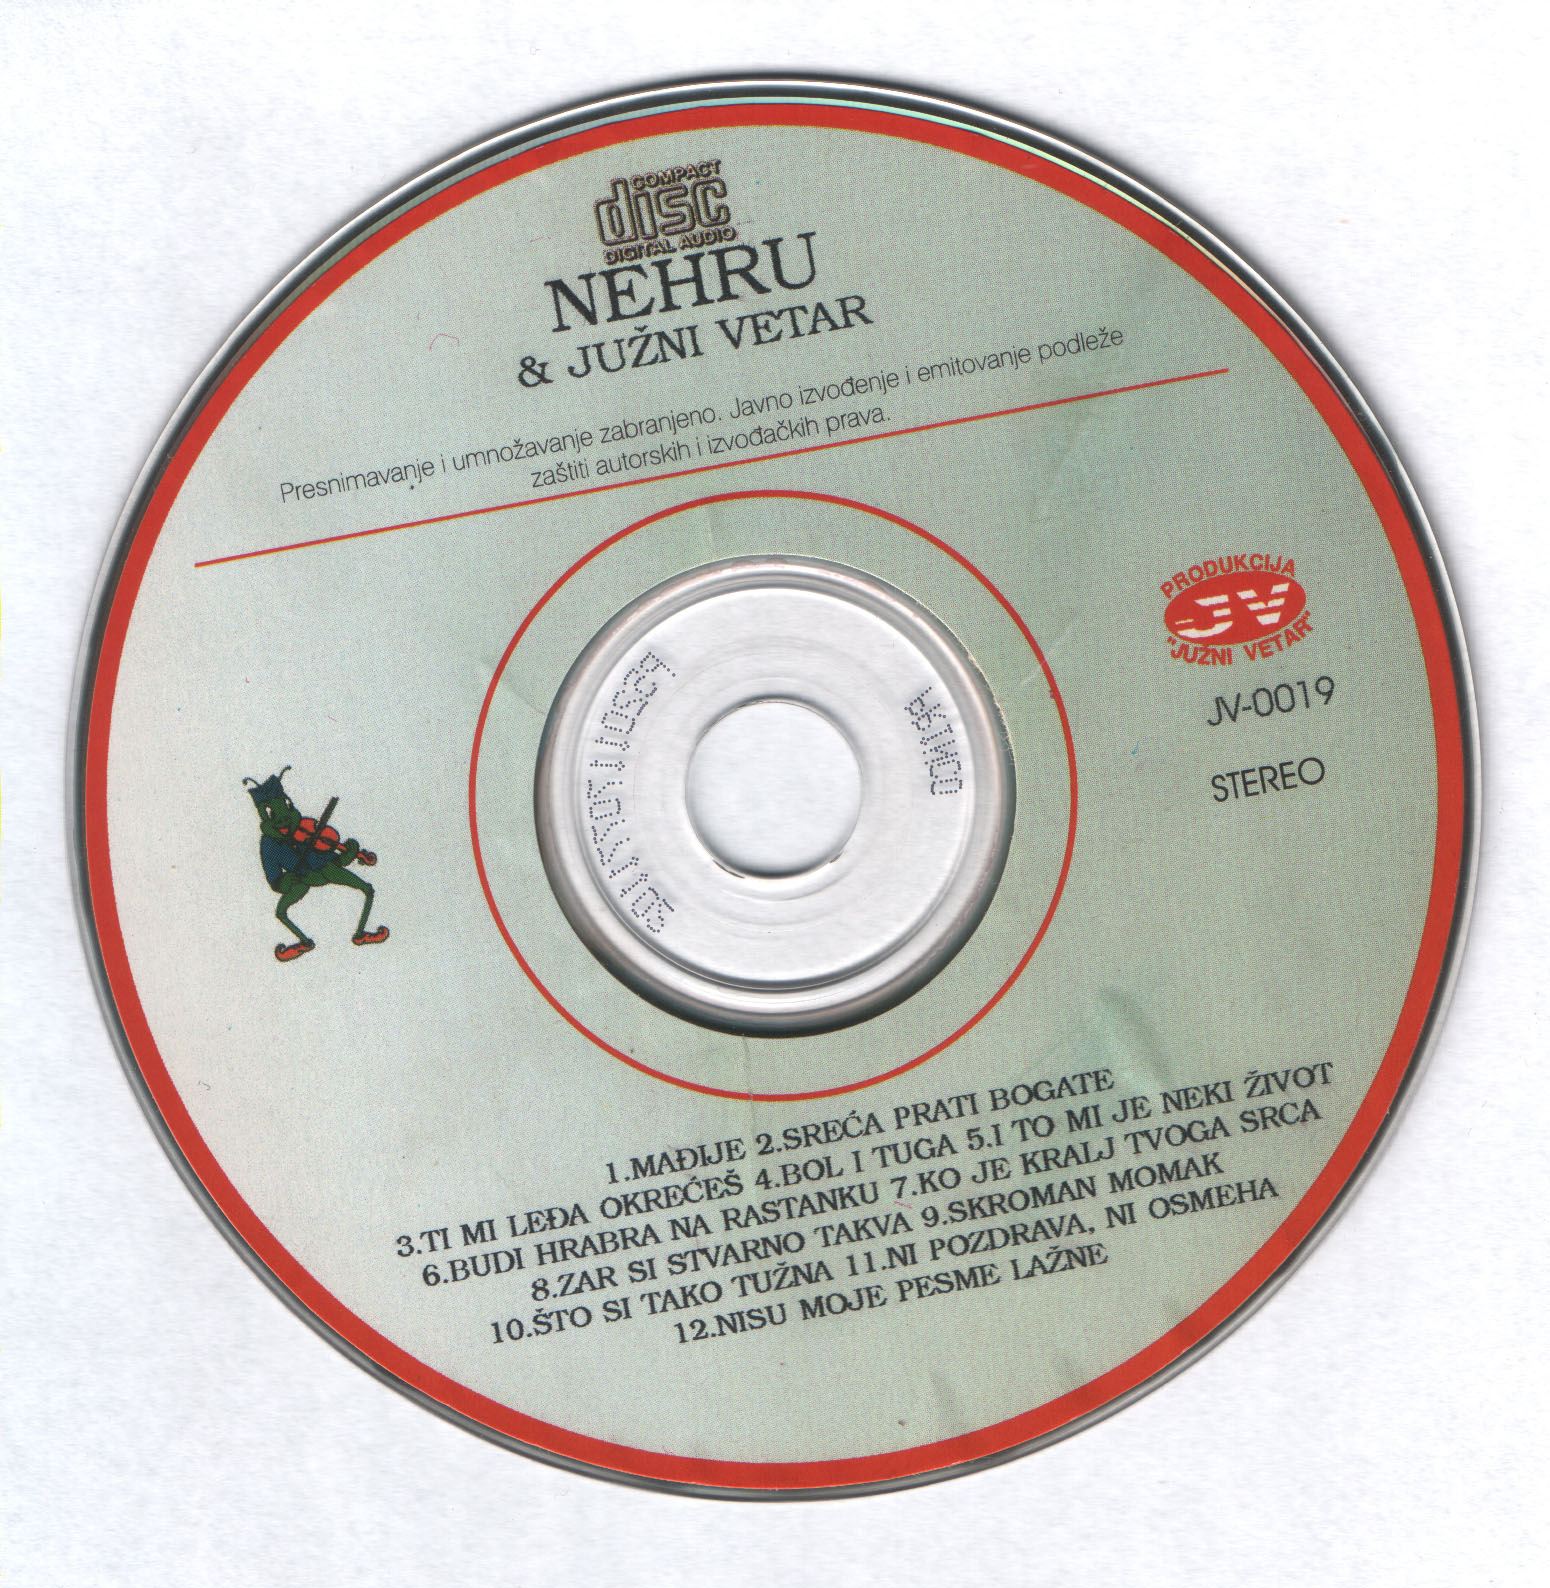 Nehru 2000 Cd